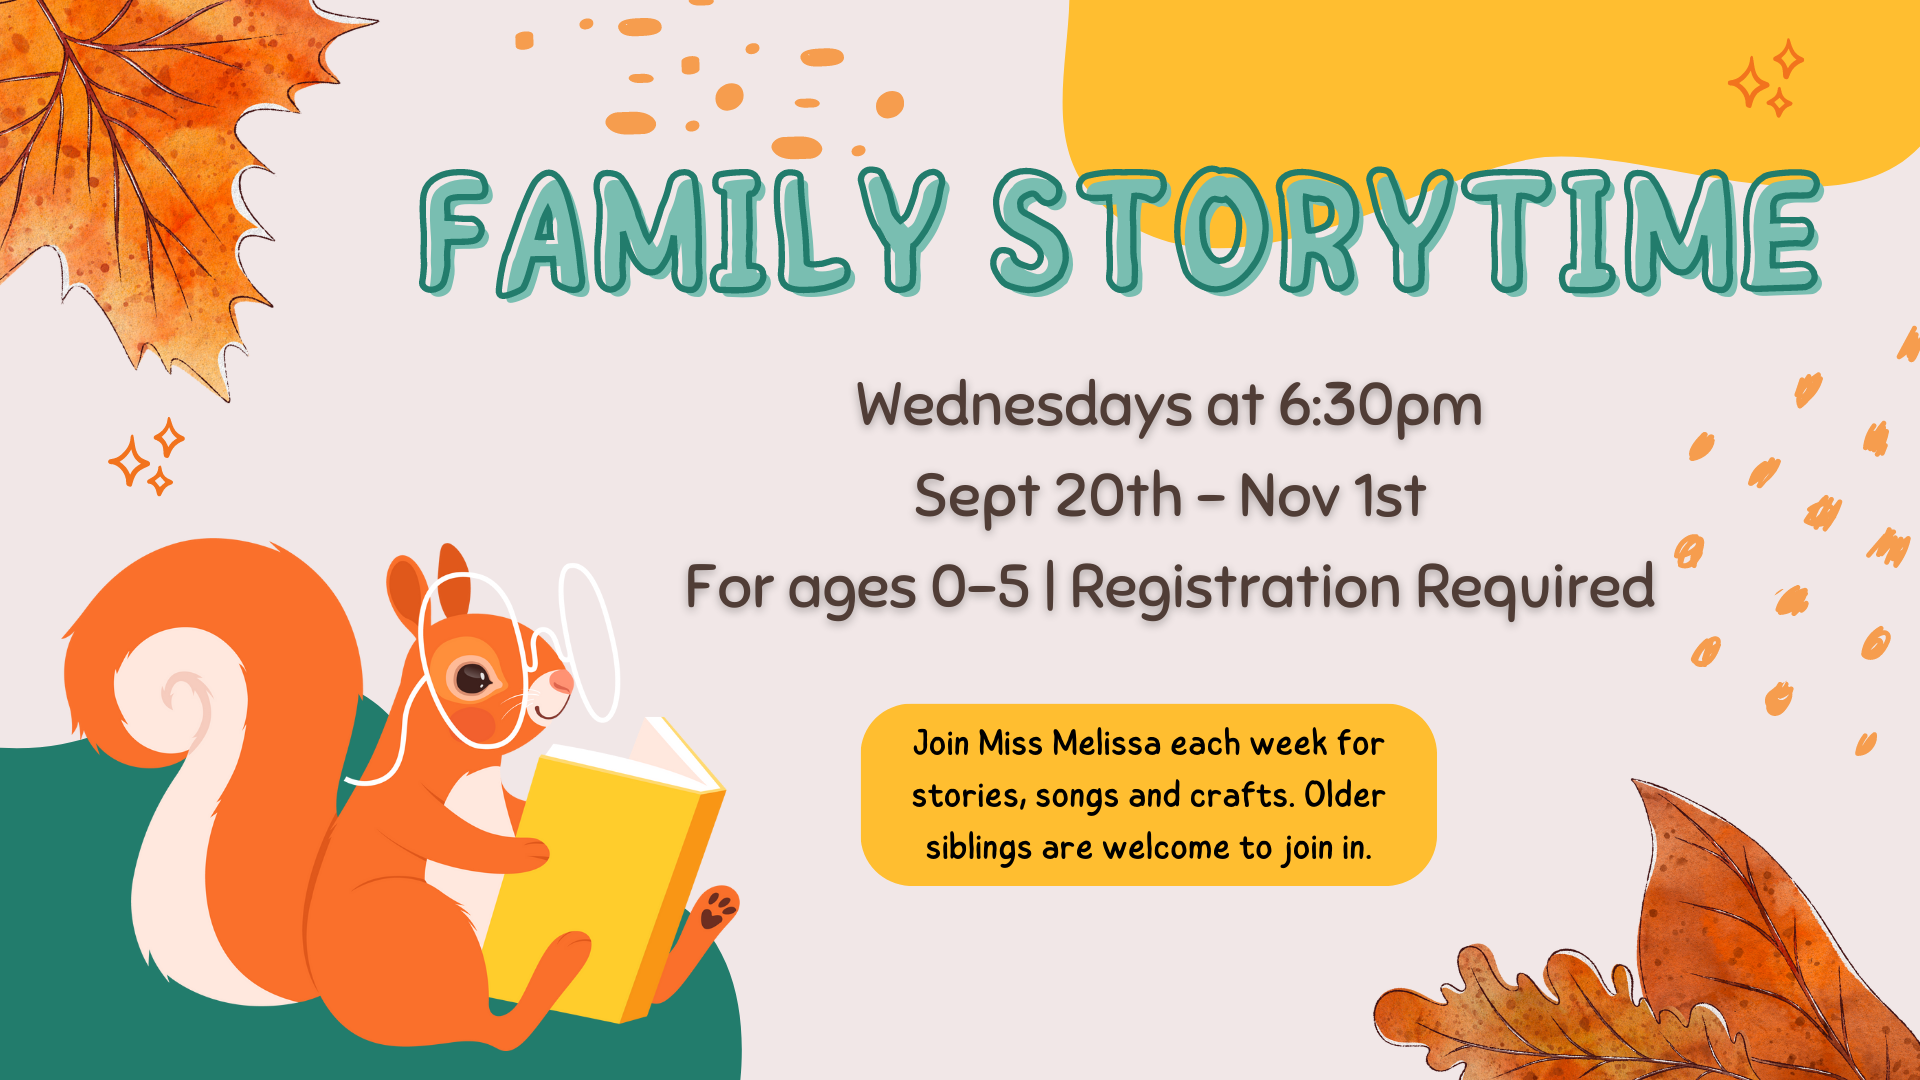 Family Storytime Evening Program